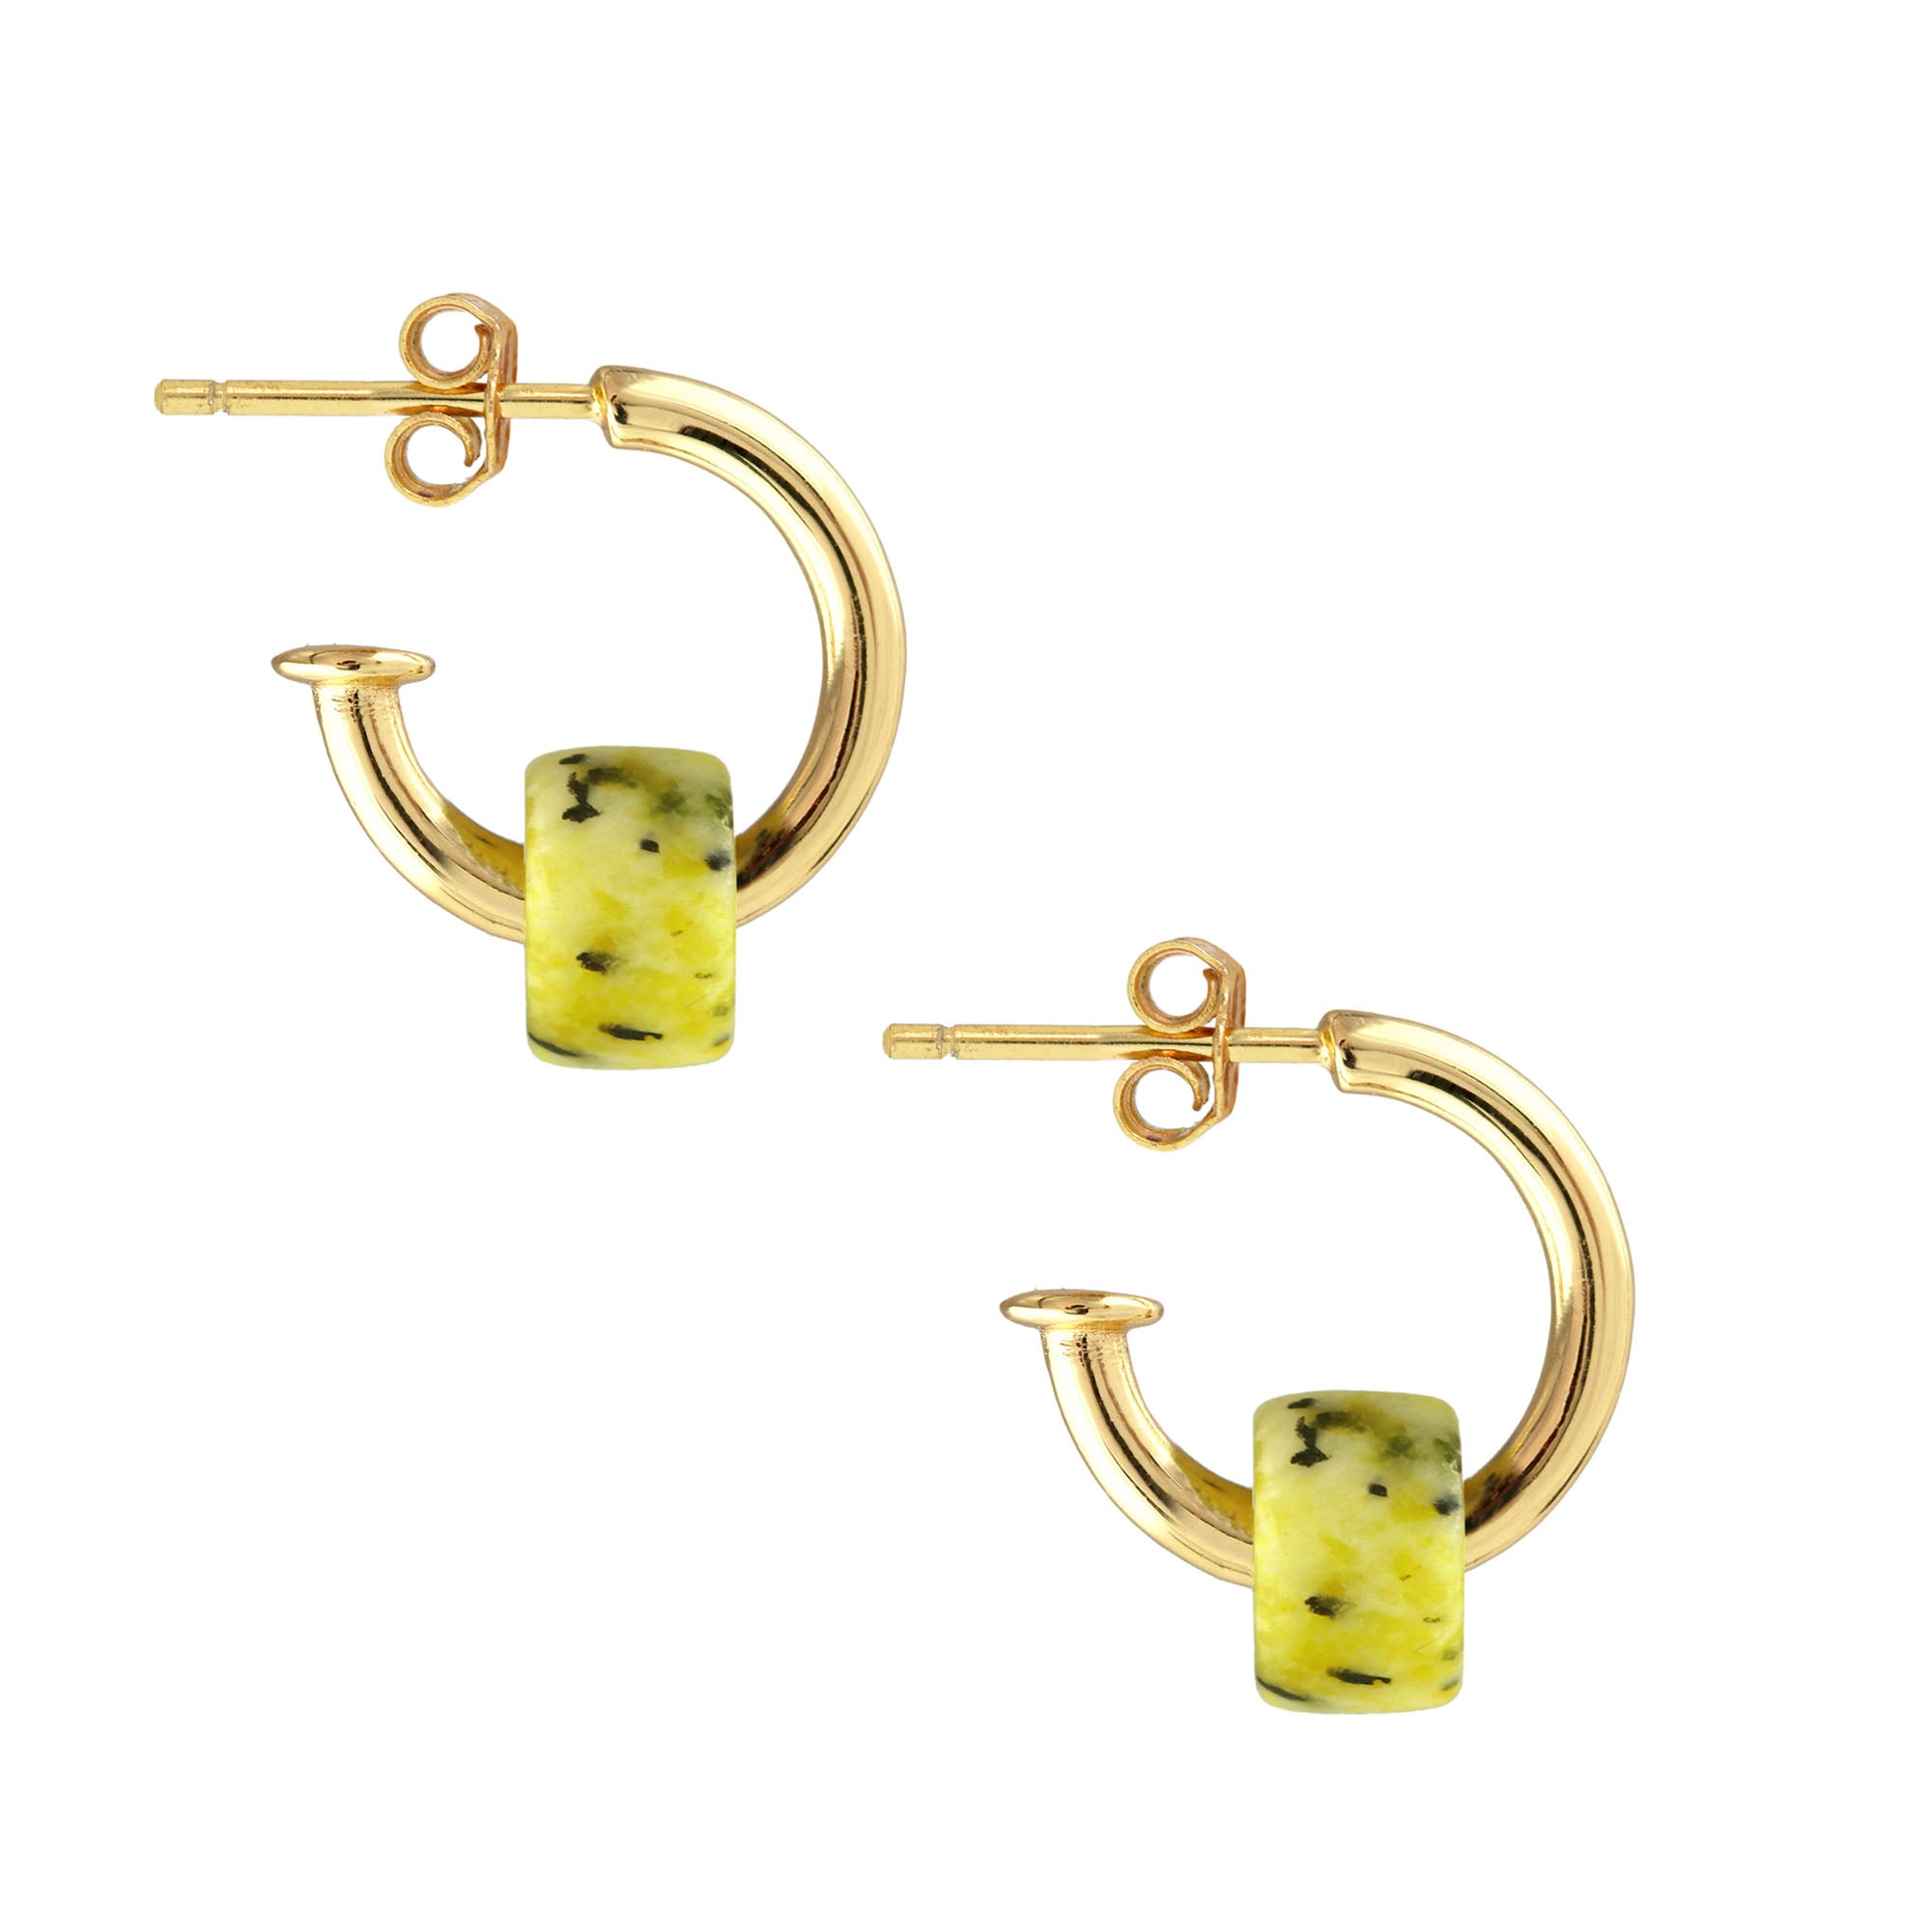 Huggie Hoop Earrings with Gemstone Bead